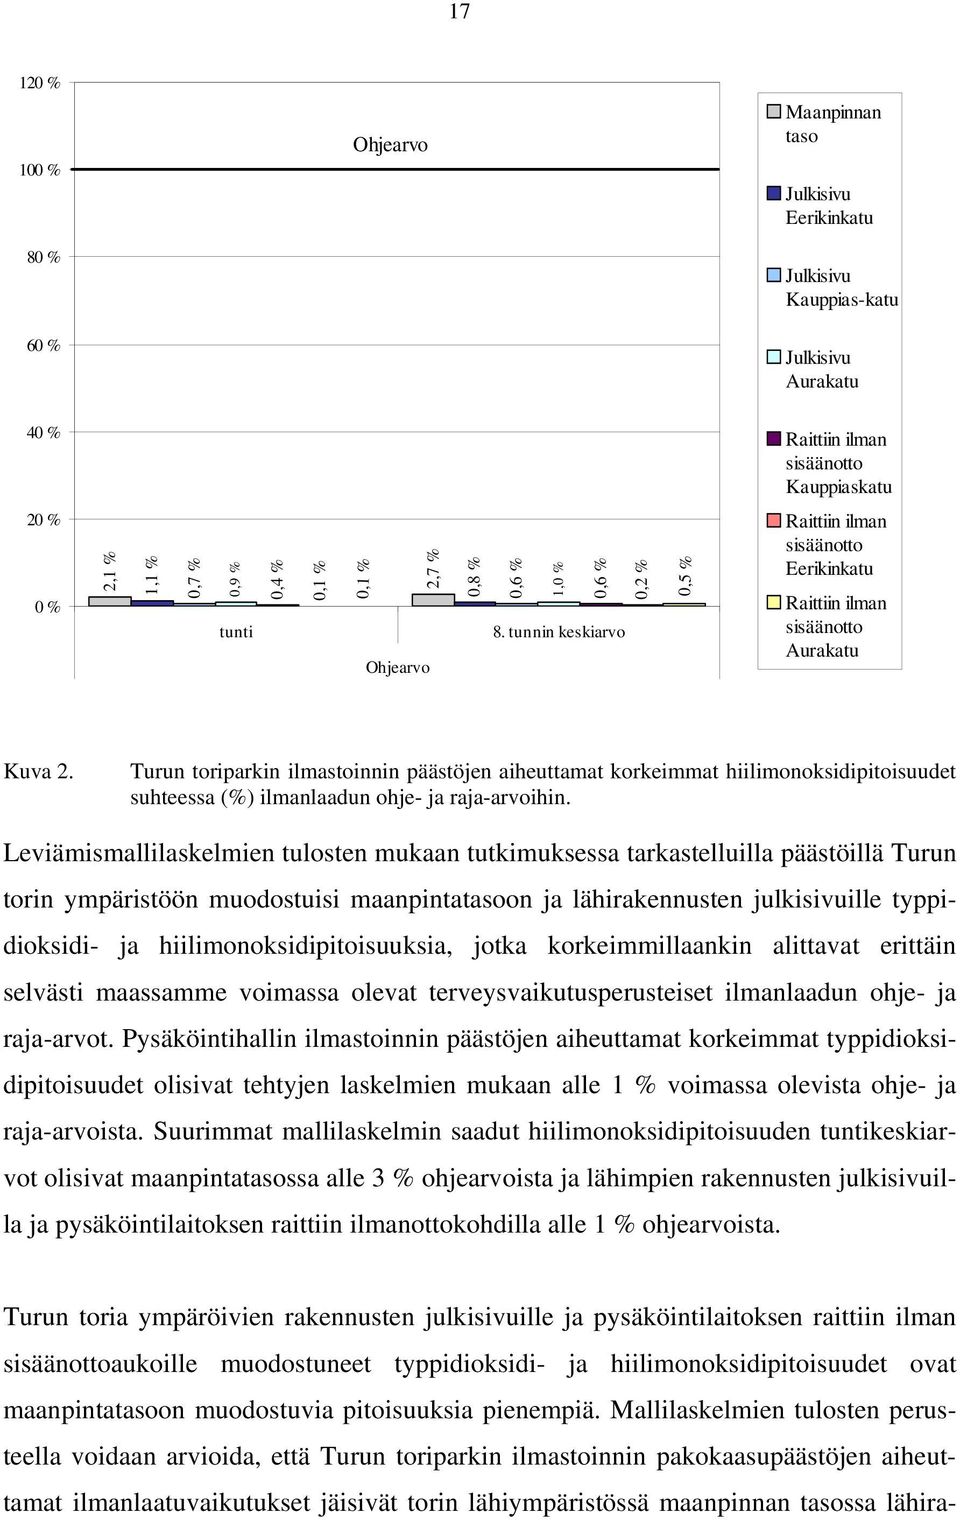 Turun toriparkin ilmastoinnin päästöjen aiheuttamat korkeimmat hiilimonoksidipitoisuudet suhteessa (%) ilmanlaadun ohje- ja raja-arvoihin.